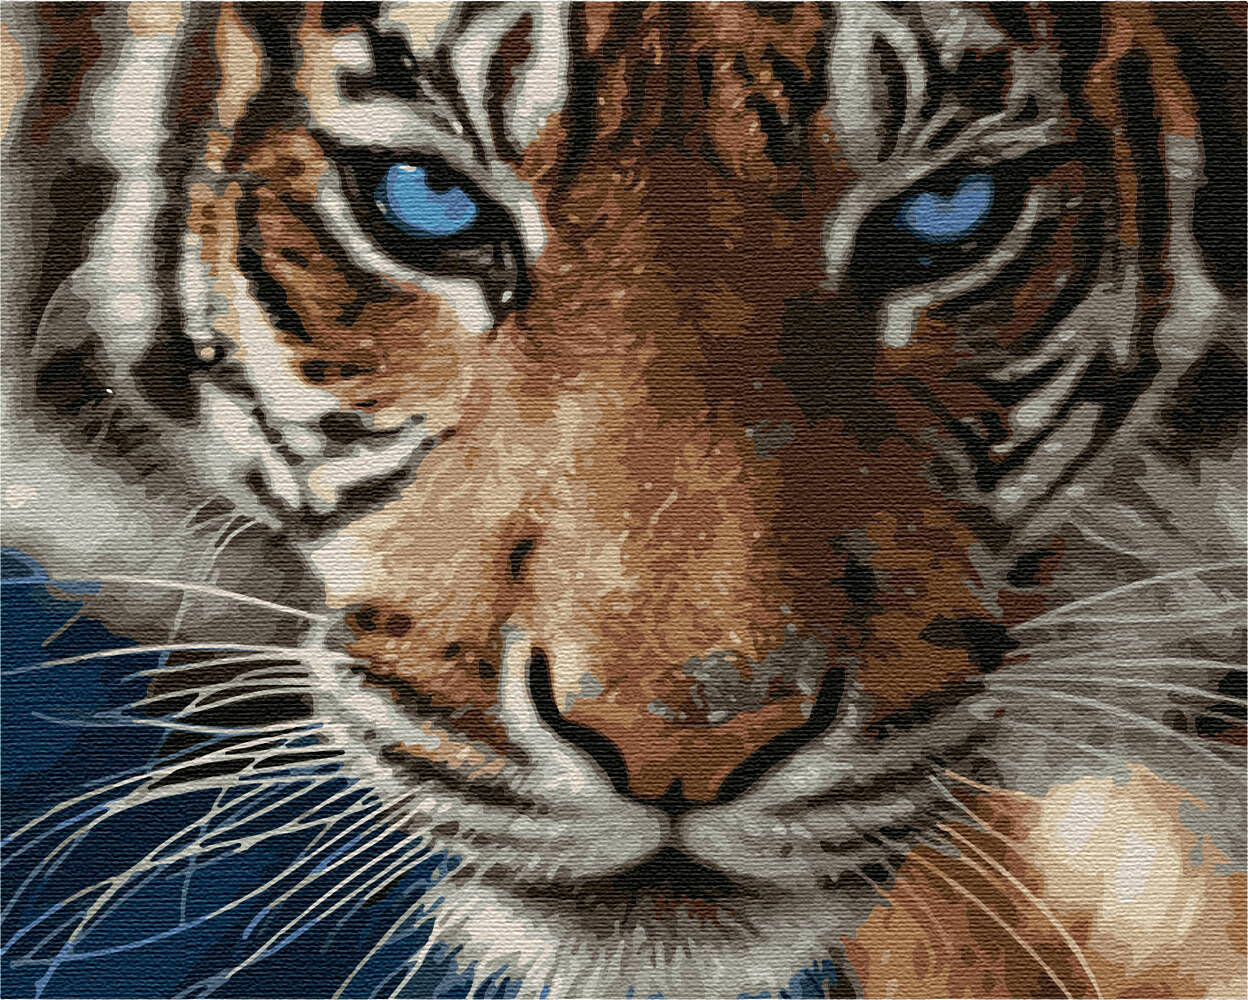 Malen nach Zahlen Tiger Tigerfamilie Afrika  Größe 30 cm x 40 cm  NEU OVP 